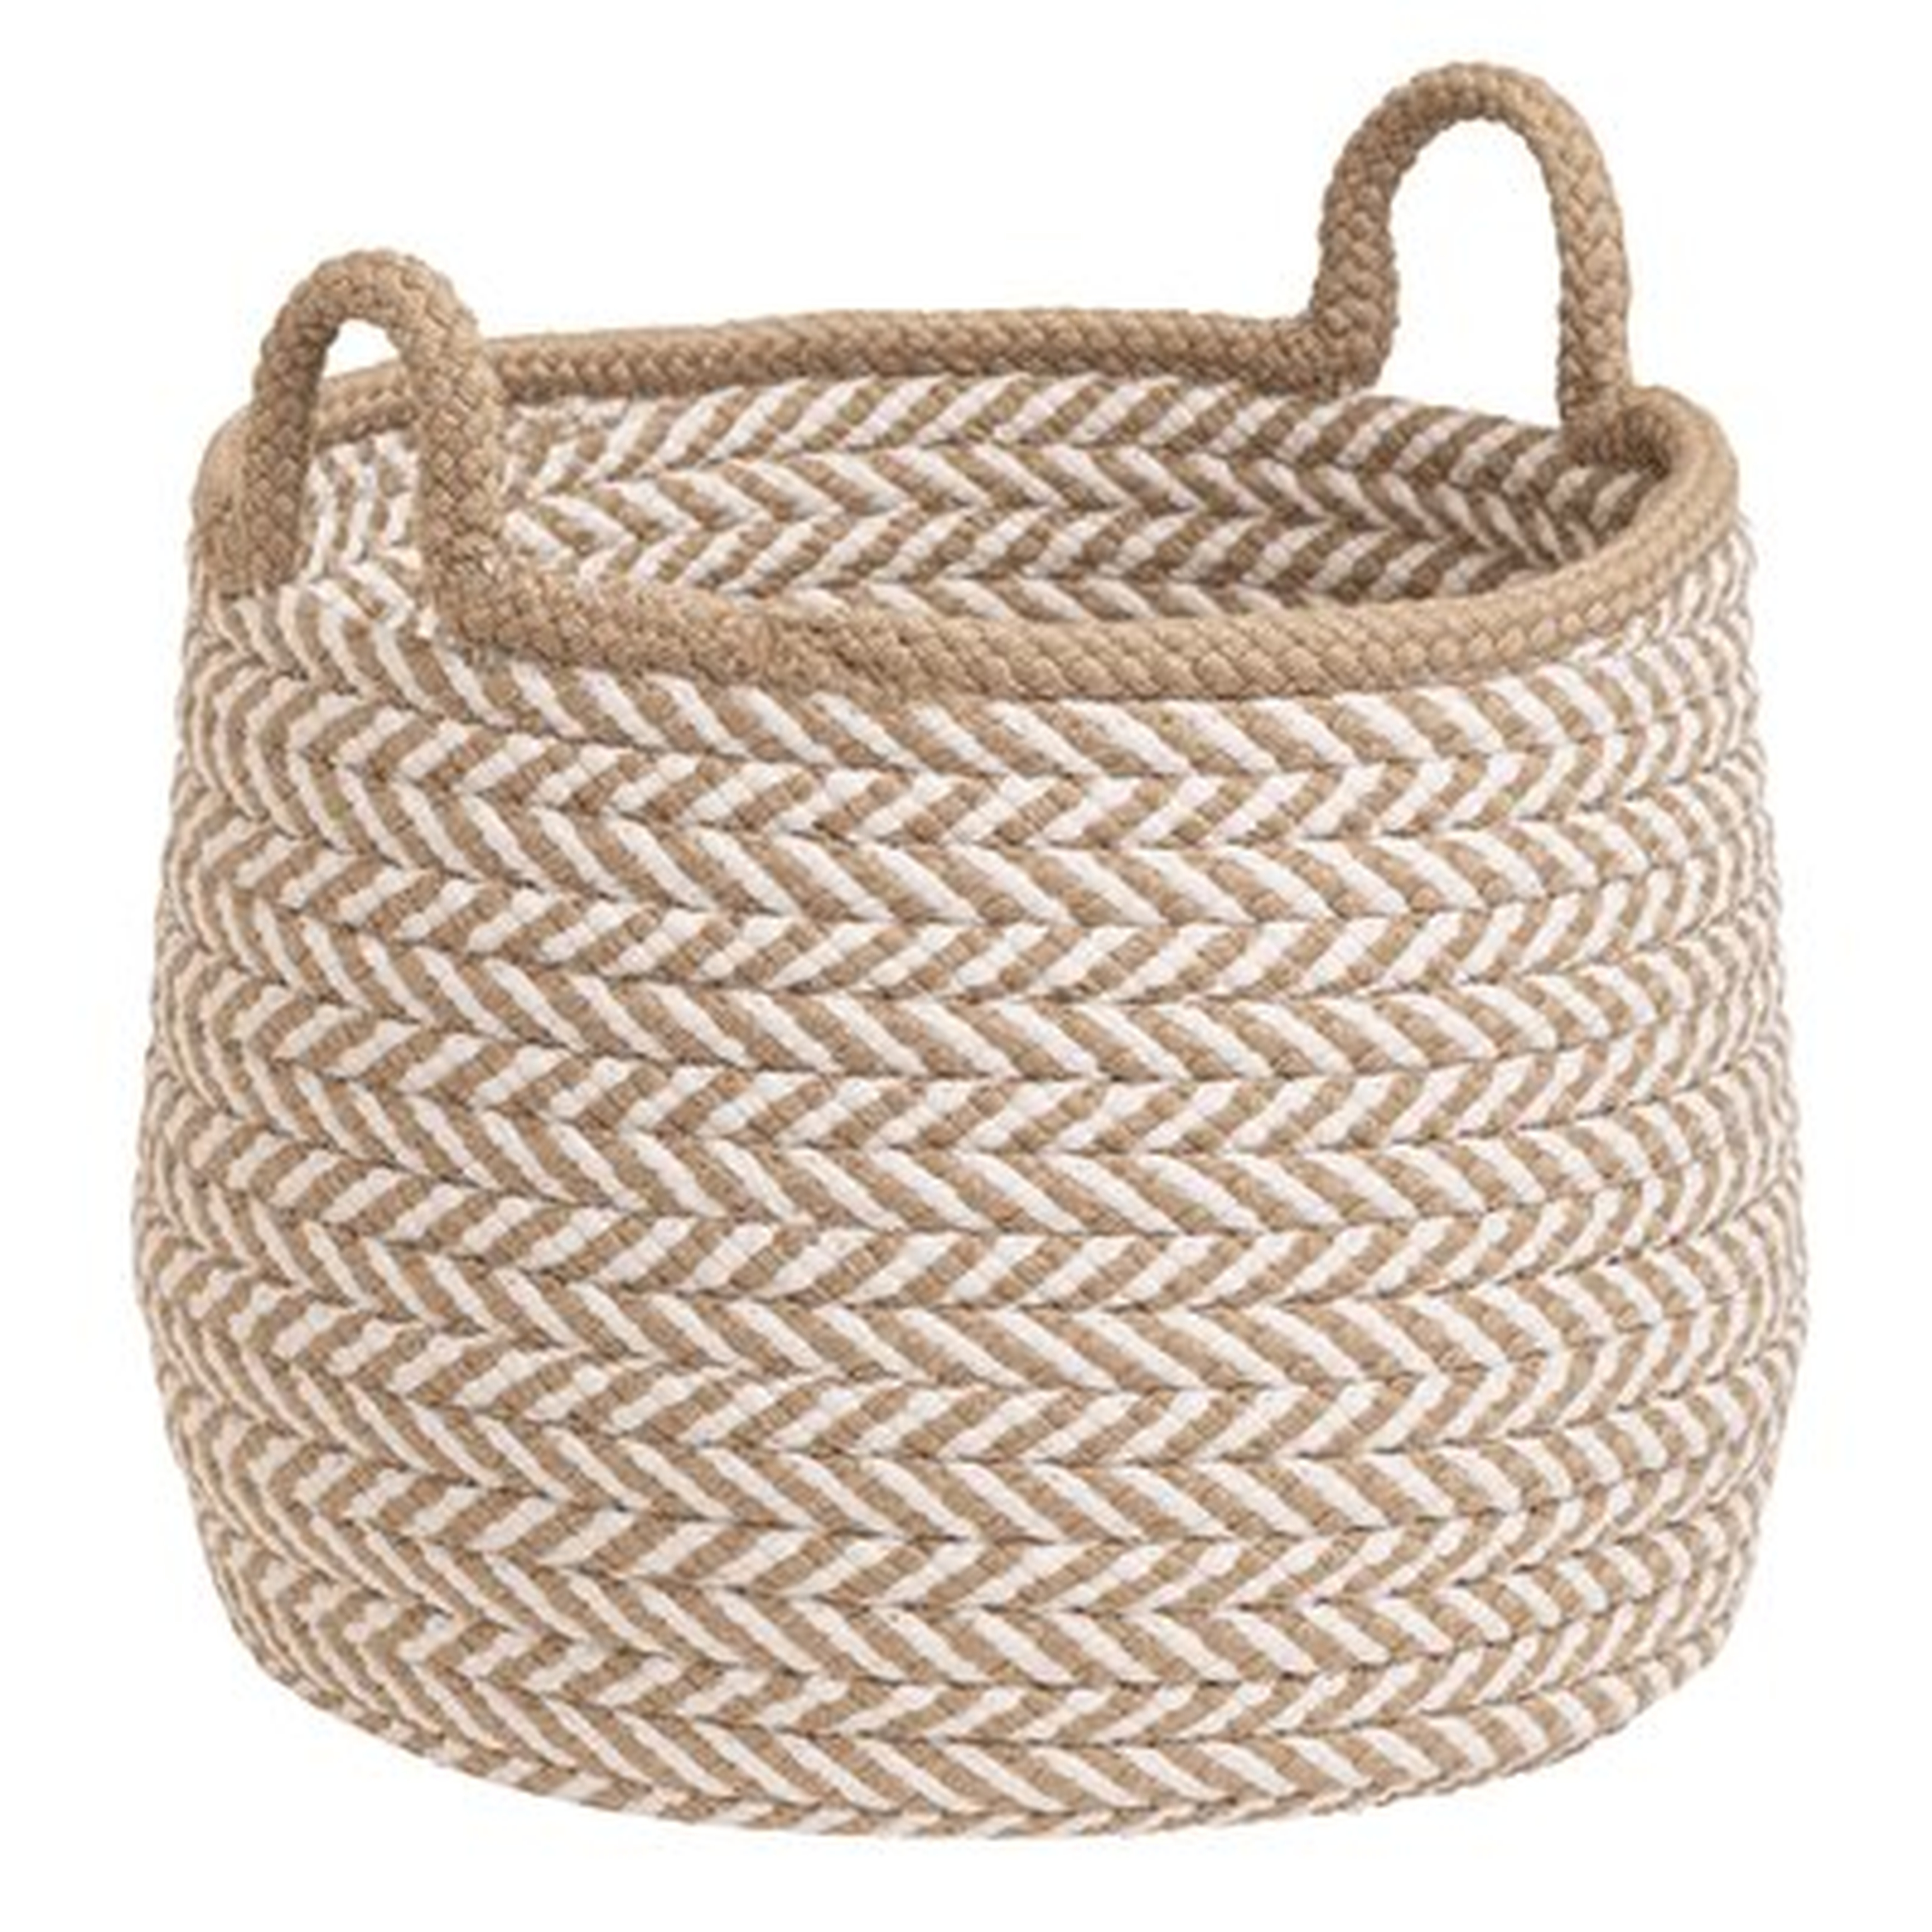 Preve Fabric Basket - Wayfair